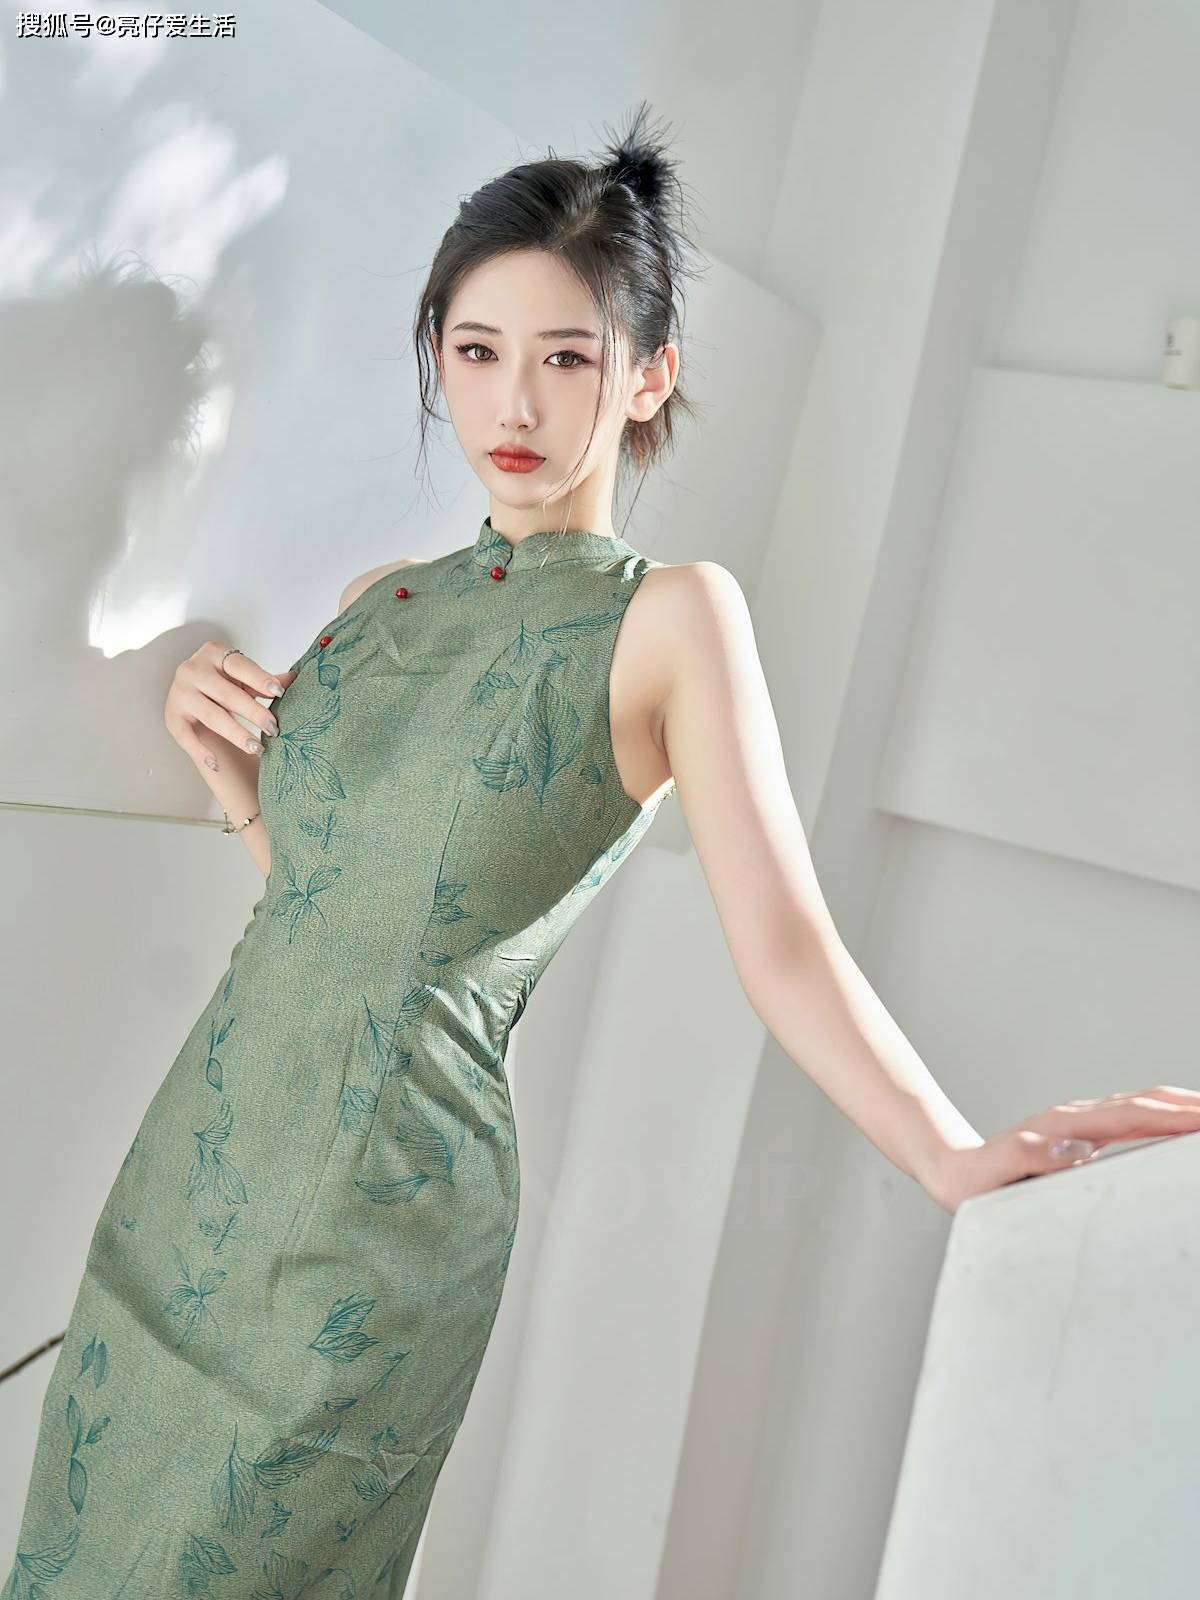 绿色旗袍之魅:古典与时尚的完美交融